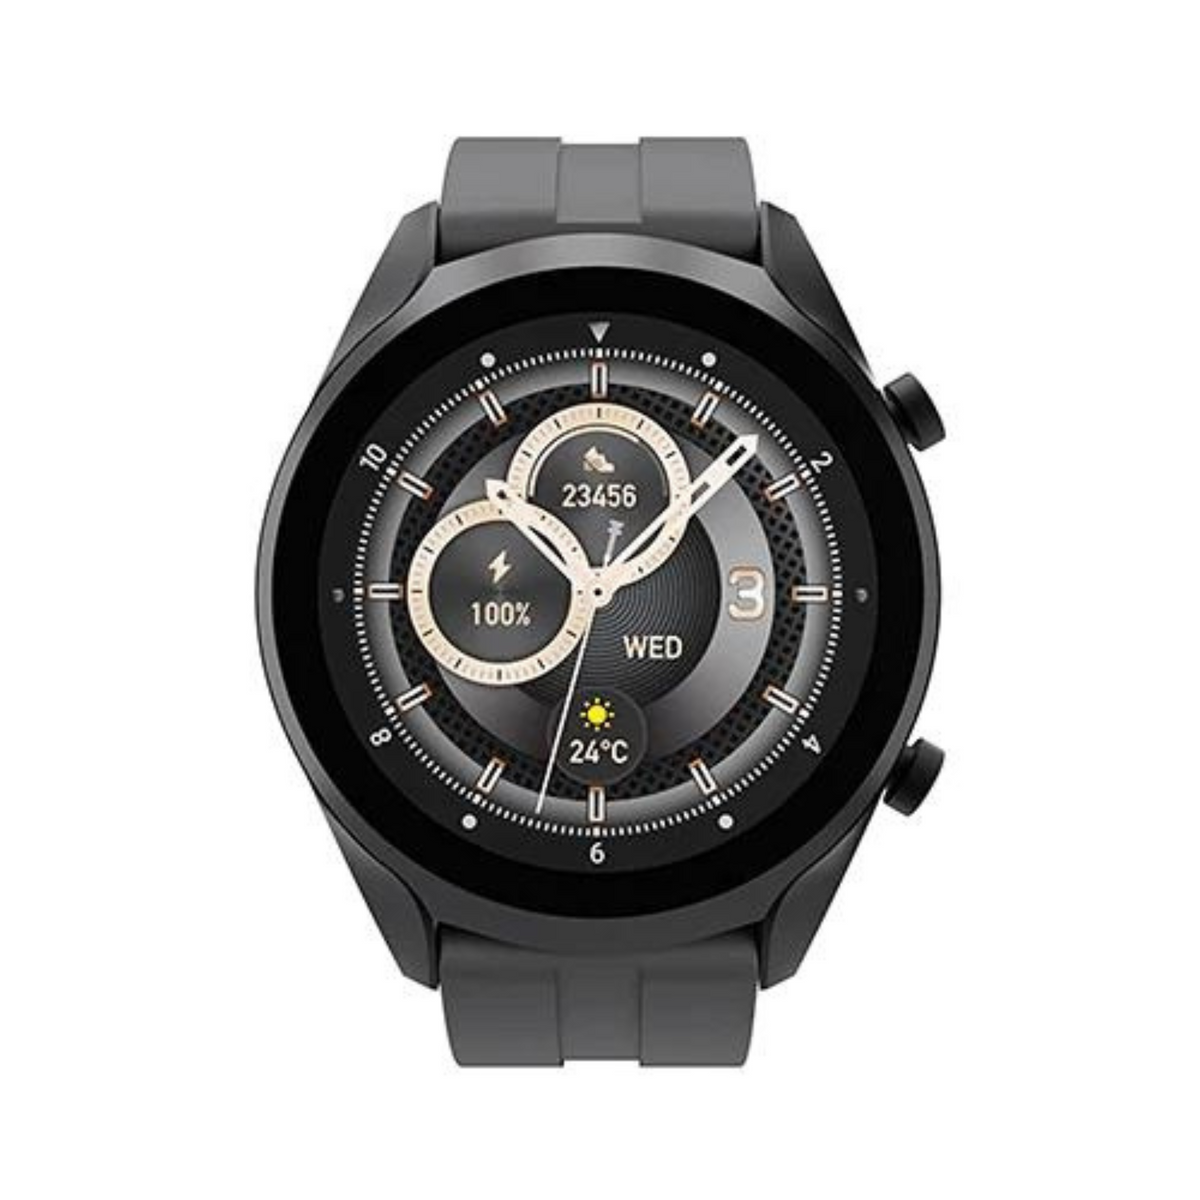 HEATZ HW11 Smart Watch Black